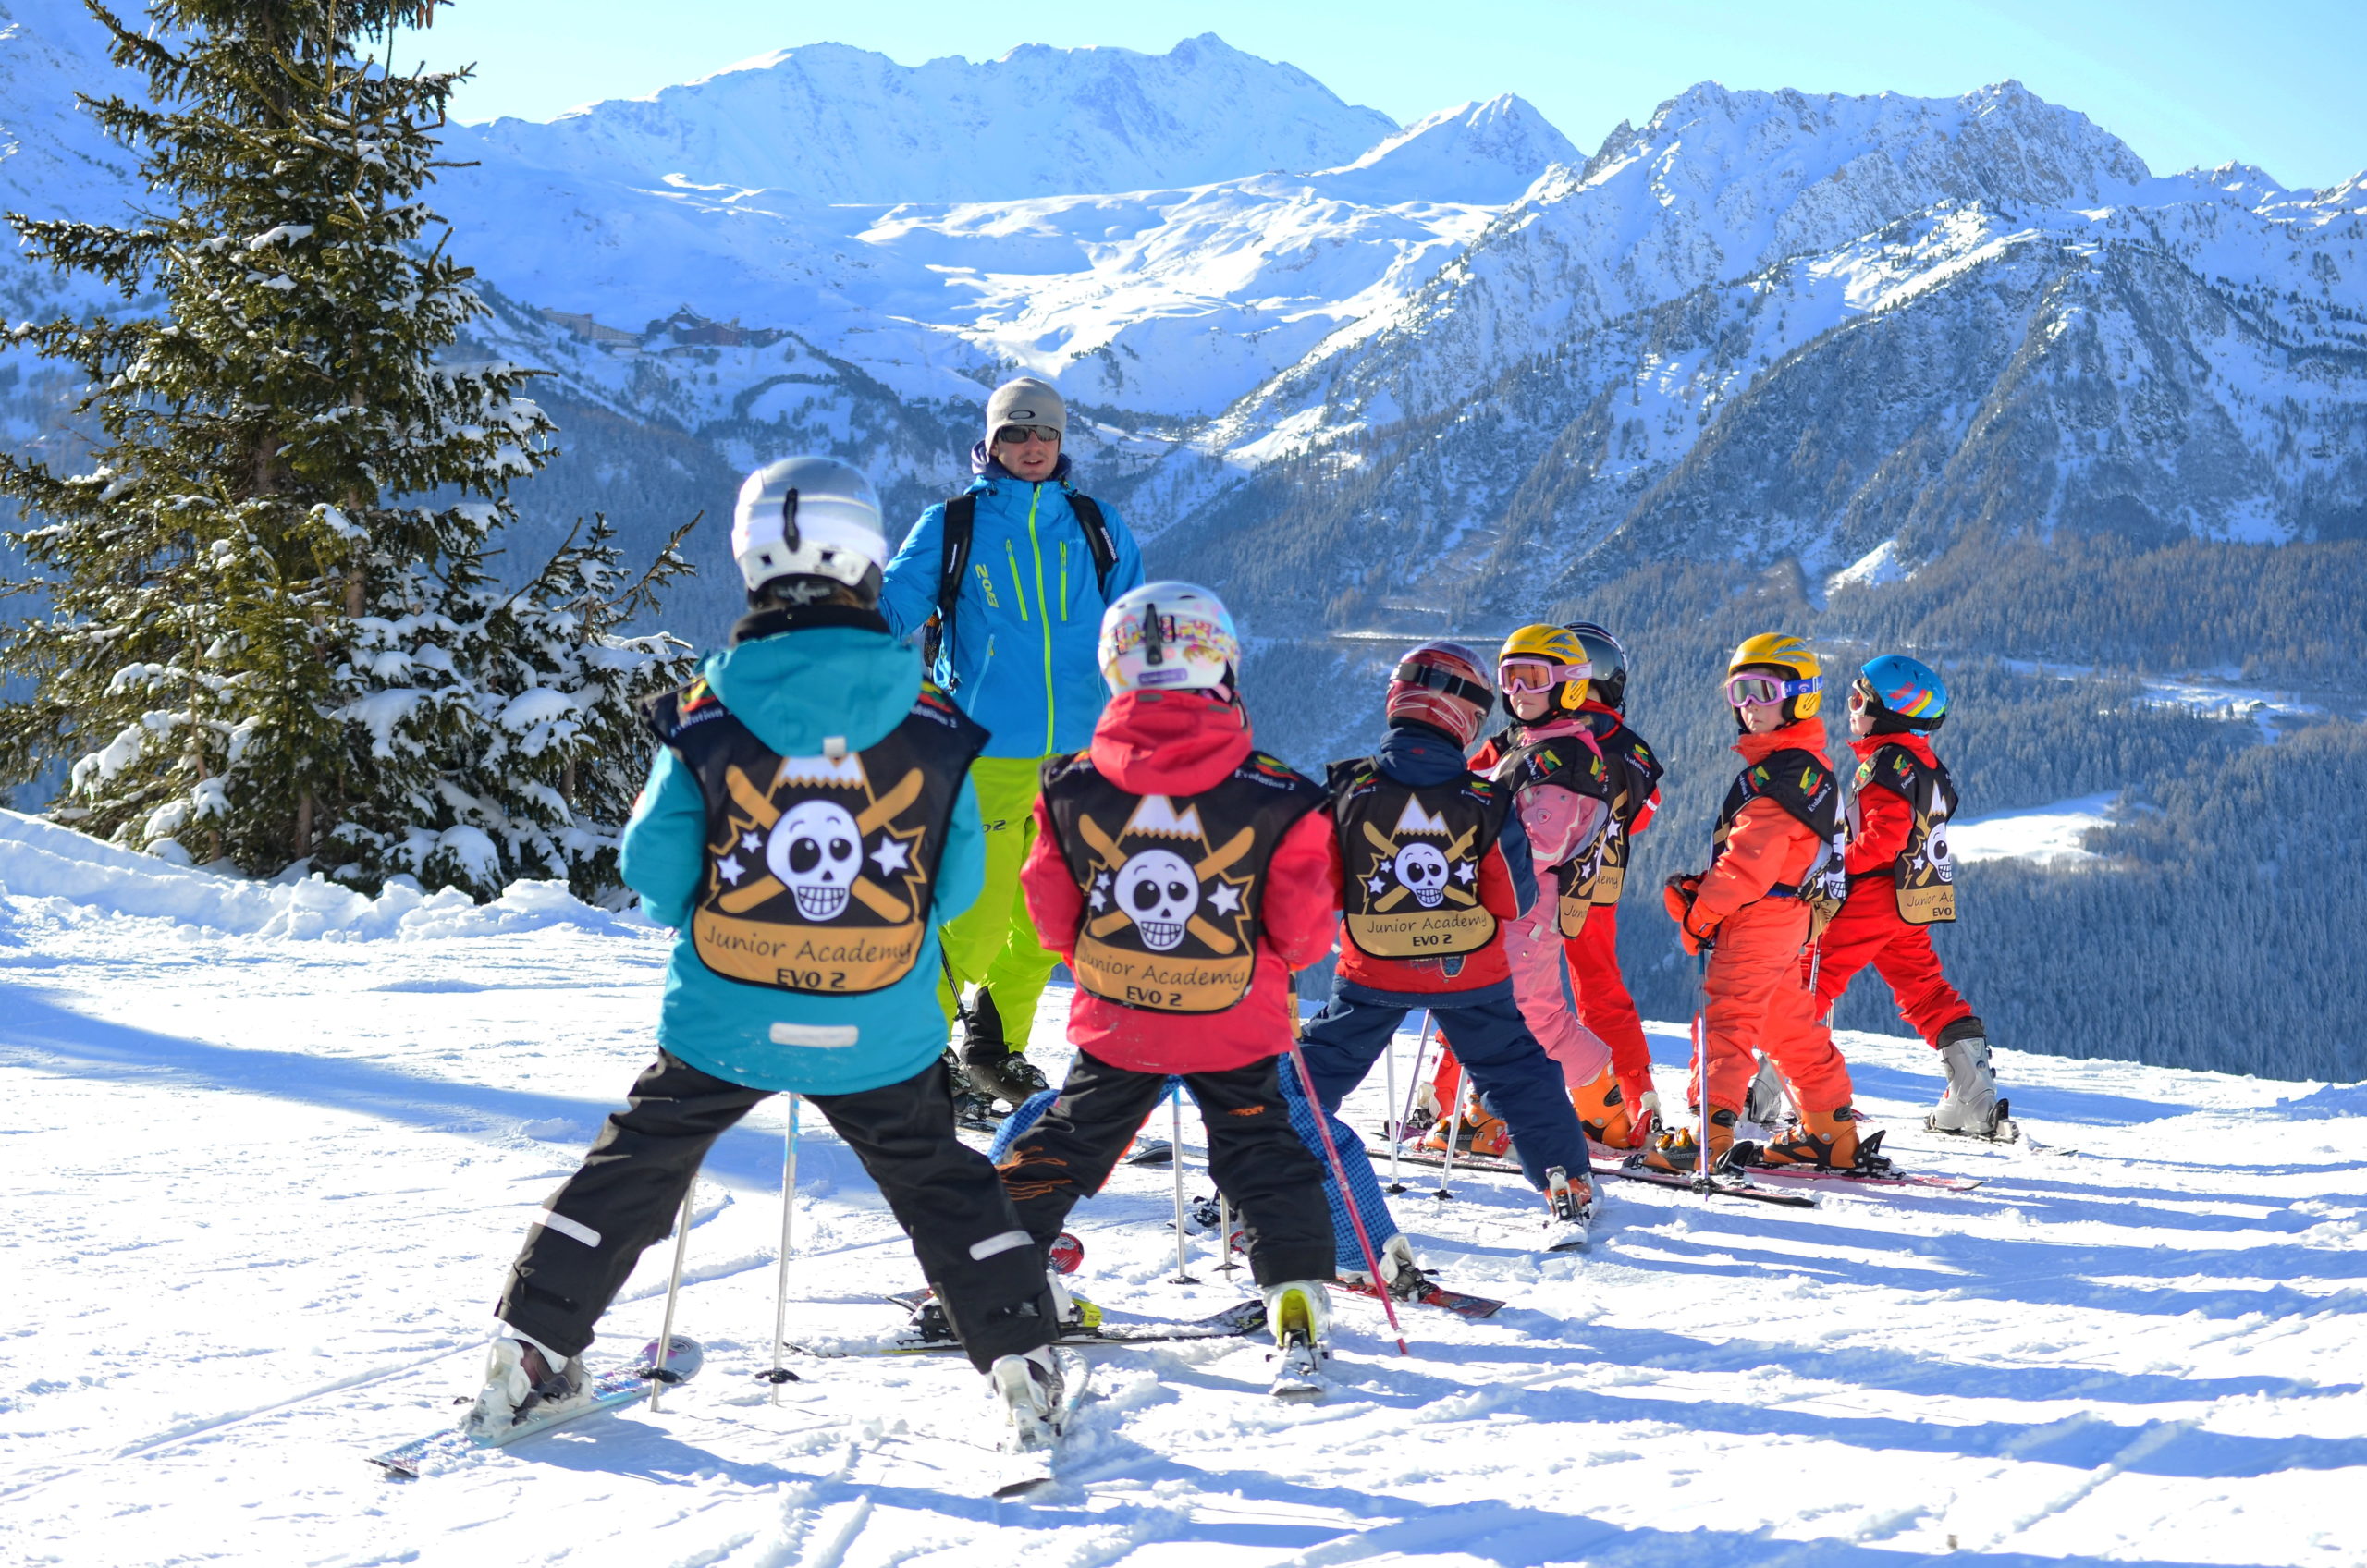 Apprentissage personnalisé du ski pour offrir à vos enfants une expérience unique et ludique. A partir de 3 ans.